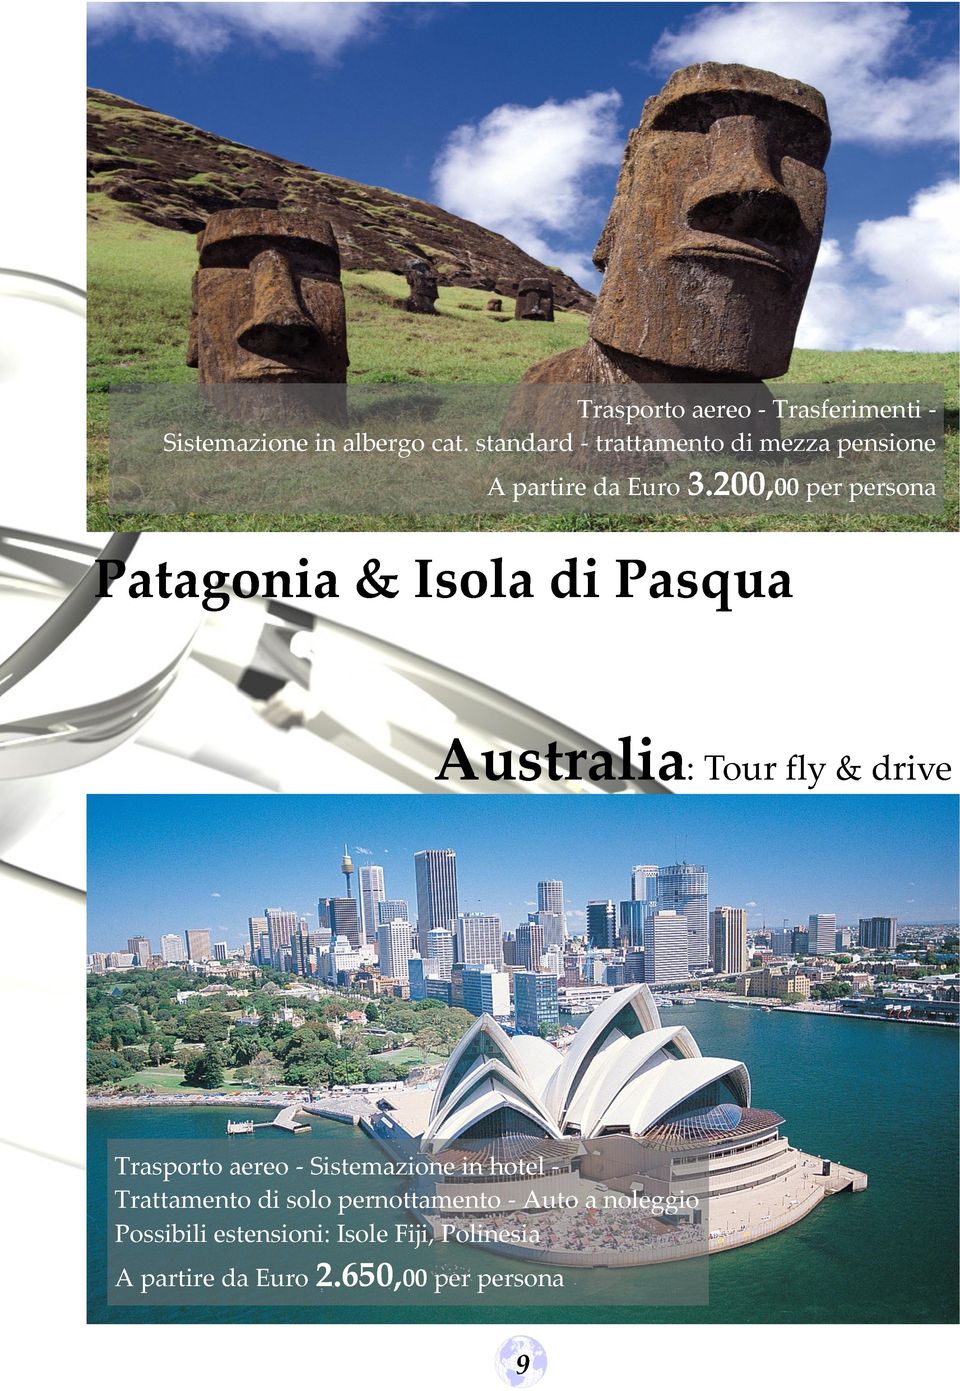 200,00 per persona Patagonia & Isola di Pasqua Australia: Tour fly & drive Trasporto aereo -